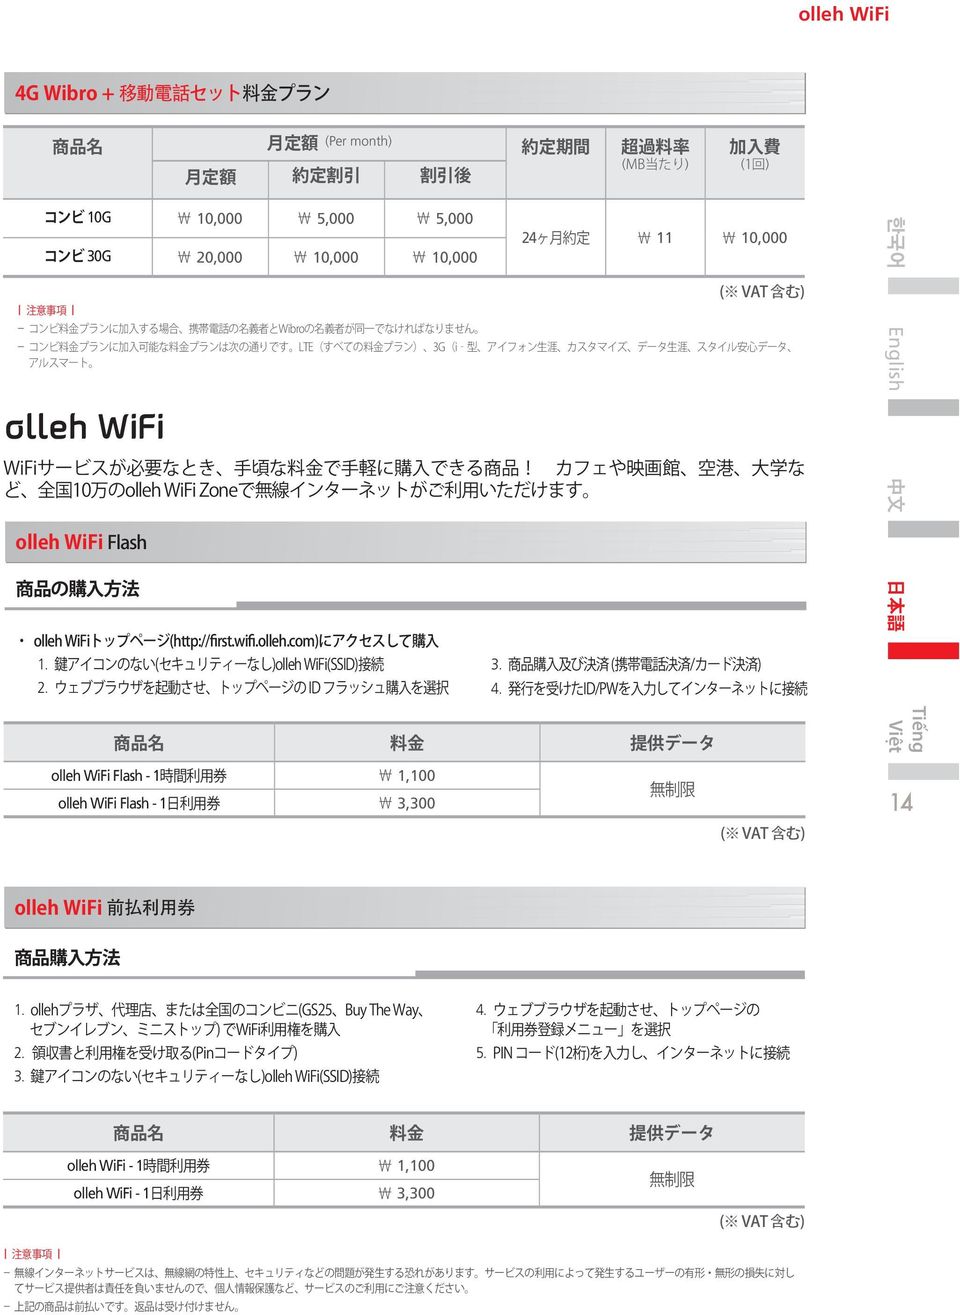 4. Tiếng olleh WiFi Flash - 1 olleh WiFi Flash - 1 1,100